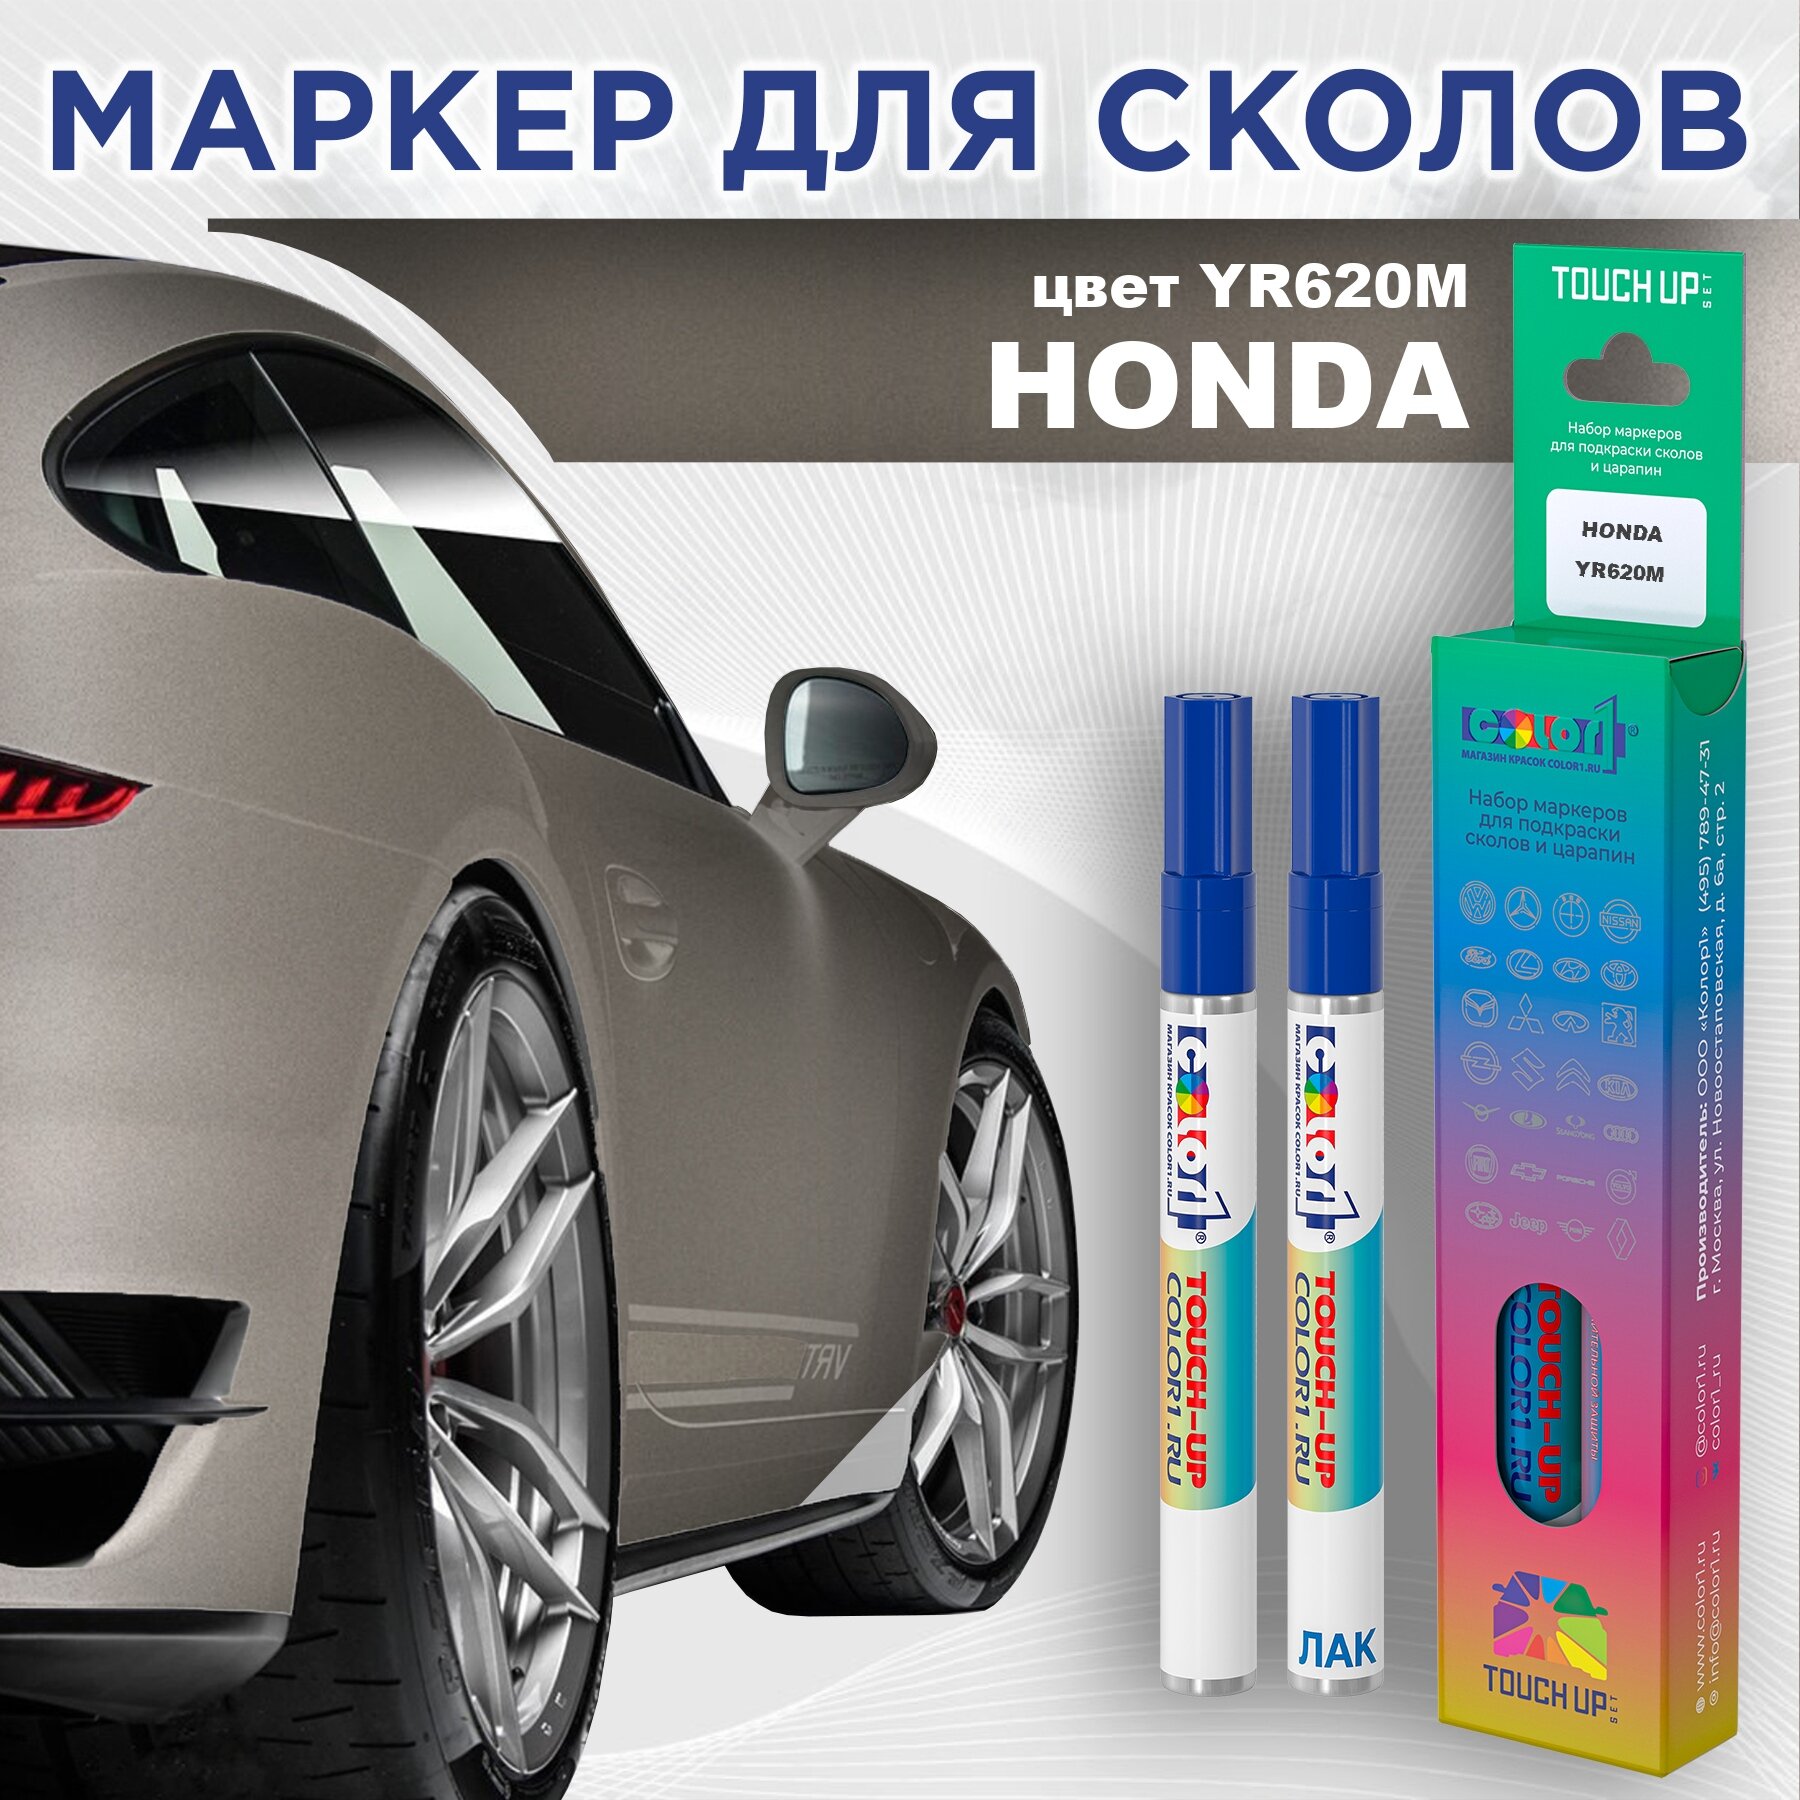 Набор маркеров (маркер с краской и маркер с лаком) для закраски сколов и царапин на автомобиле HONDA, цвет YR620M - SAHARA MOON, SANDSTORM